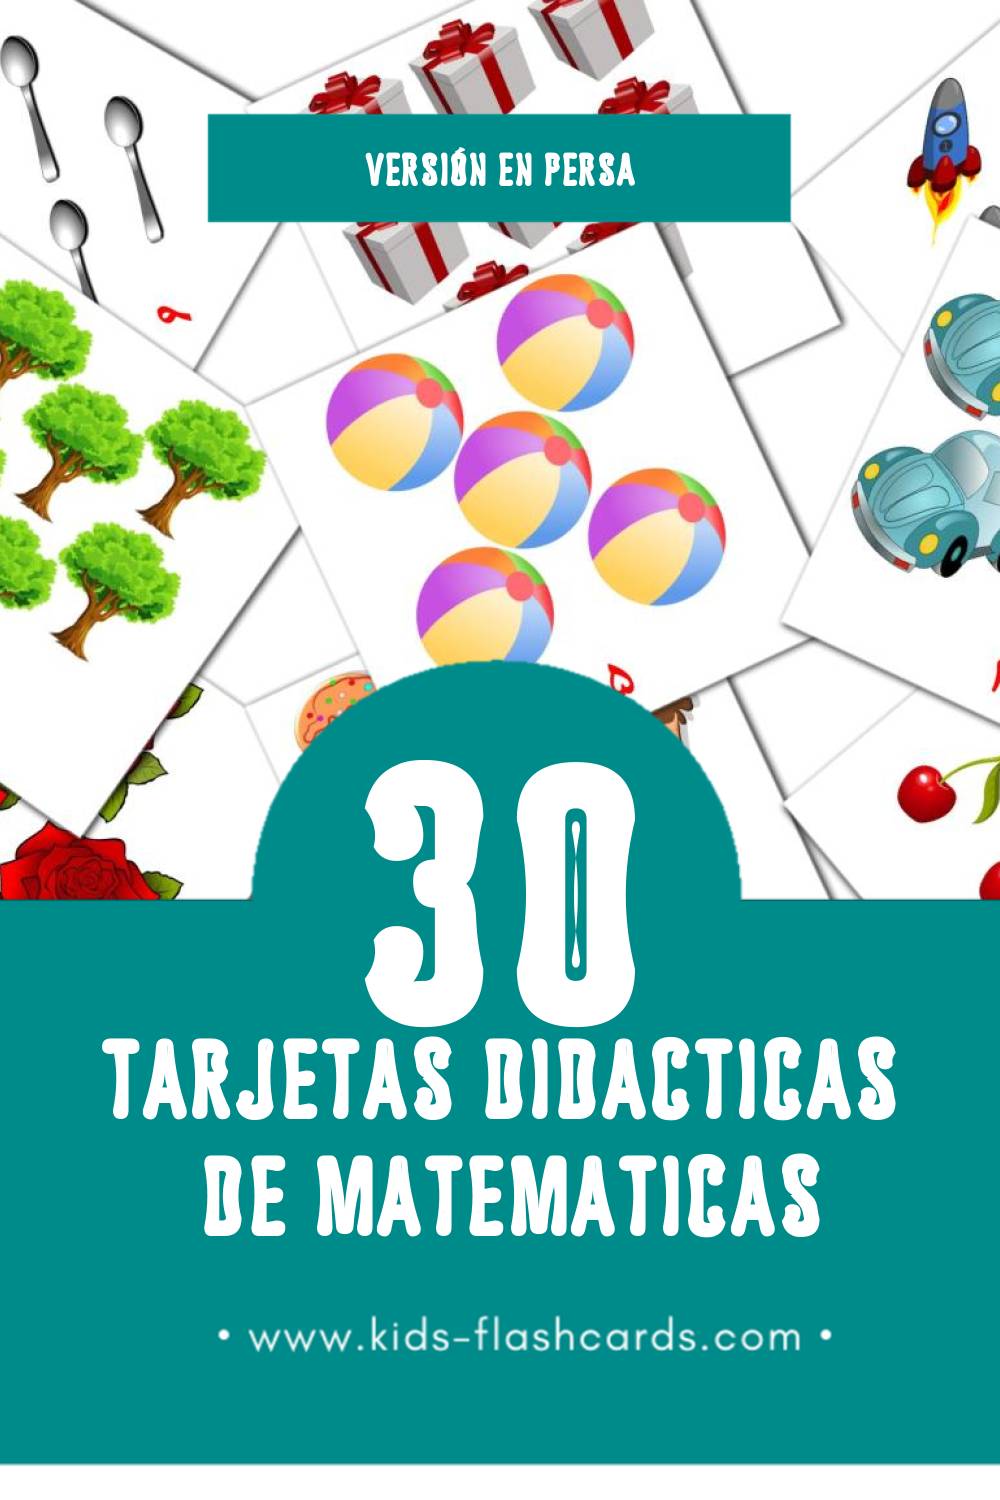 Tarjetas visuales de ریاضیات para niños pequeños (30 tarjetas en Persa)